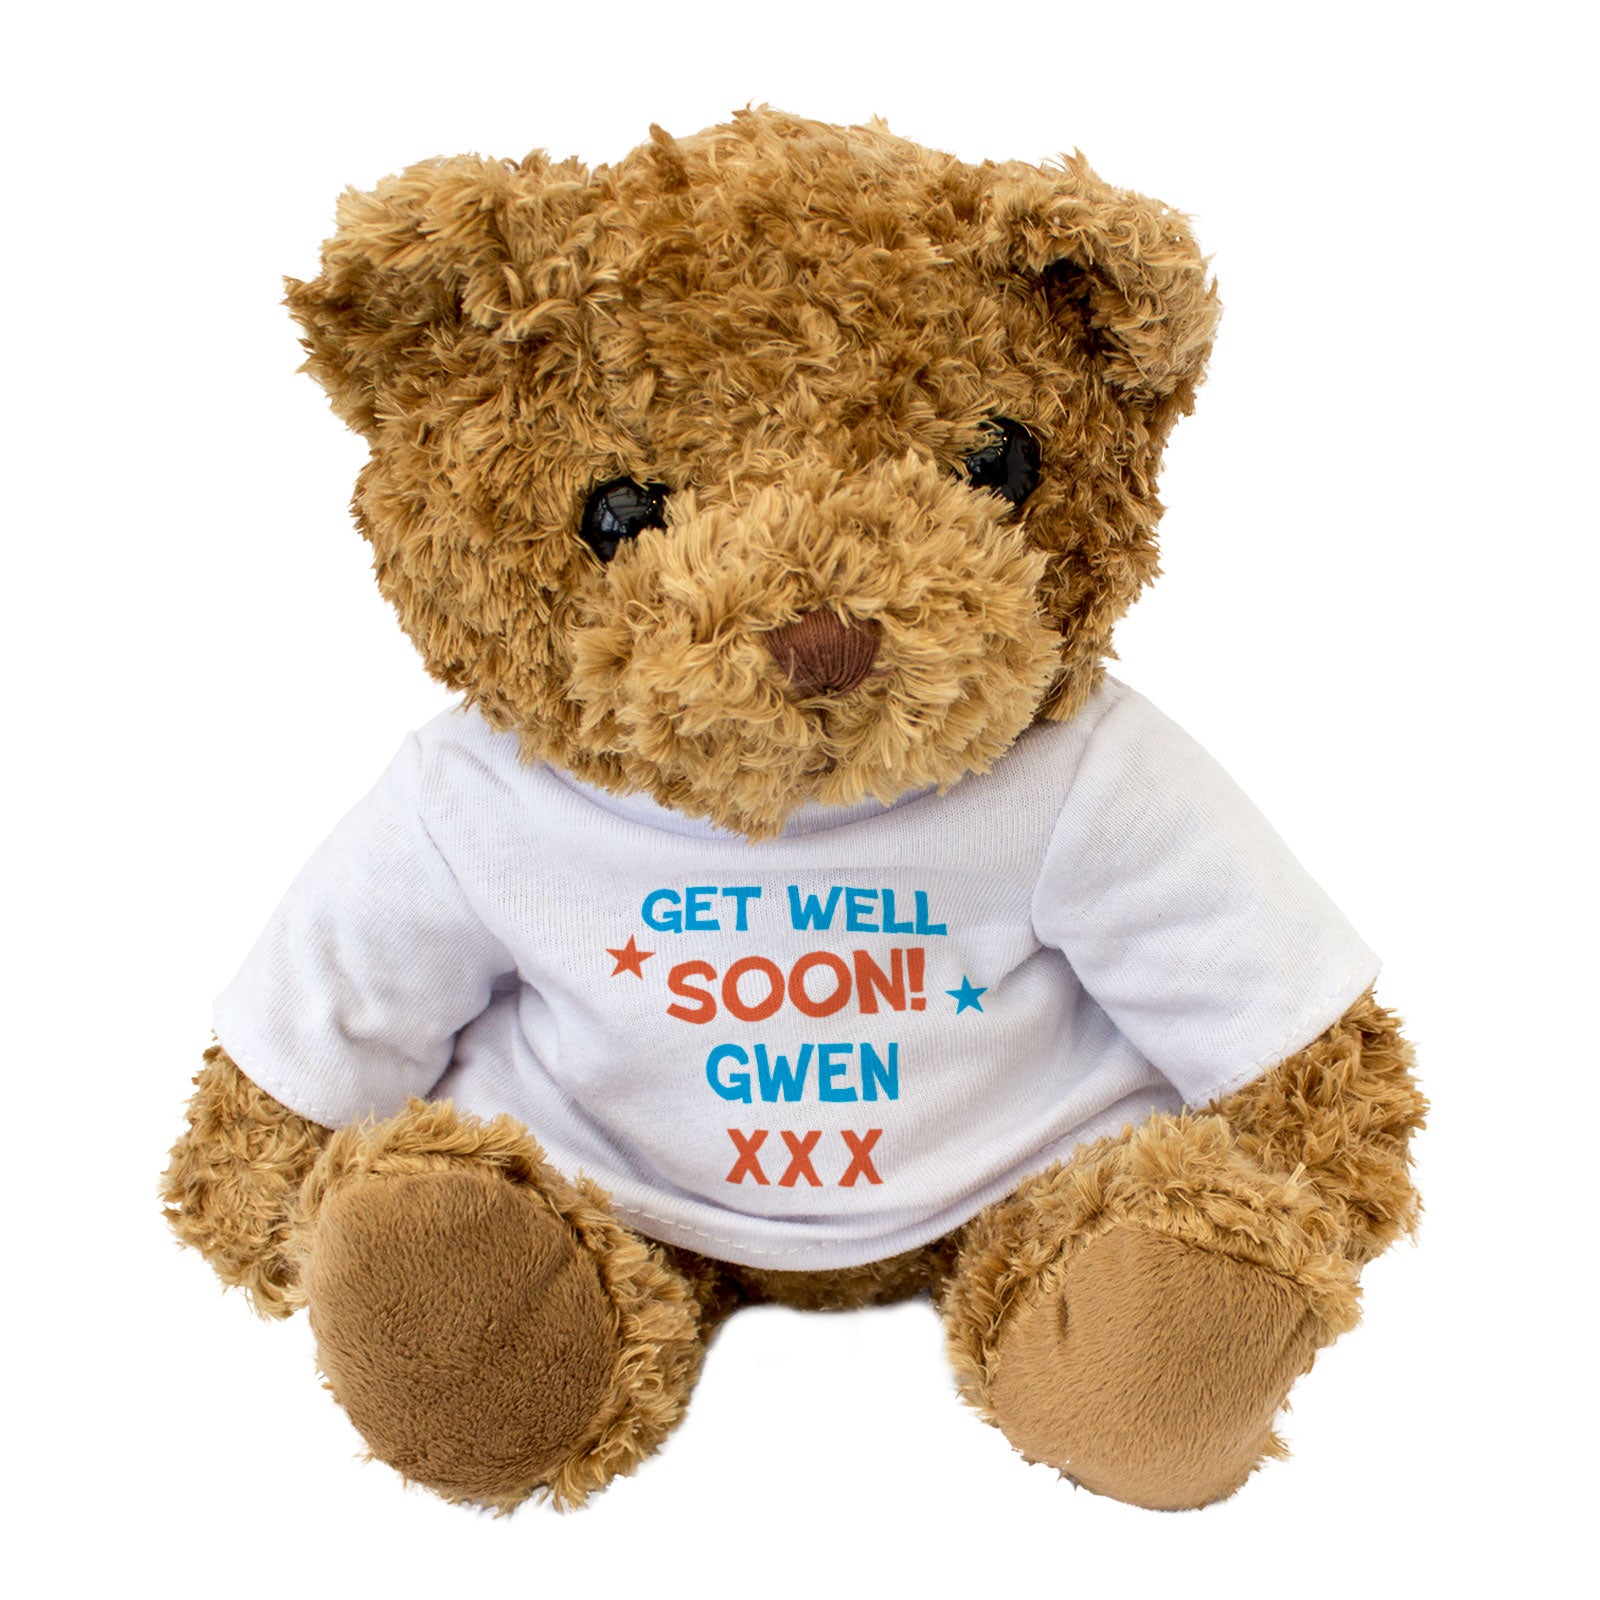 Get Well Soon Gwen - Teddy Bear